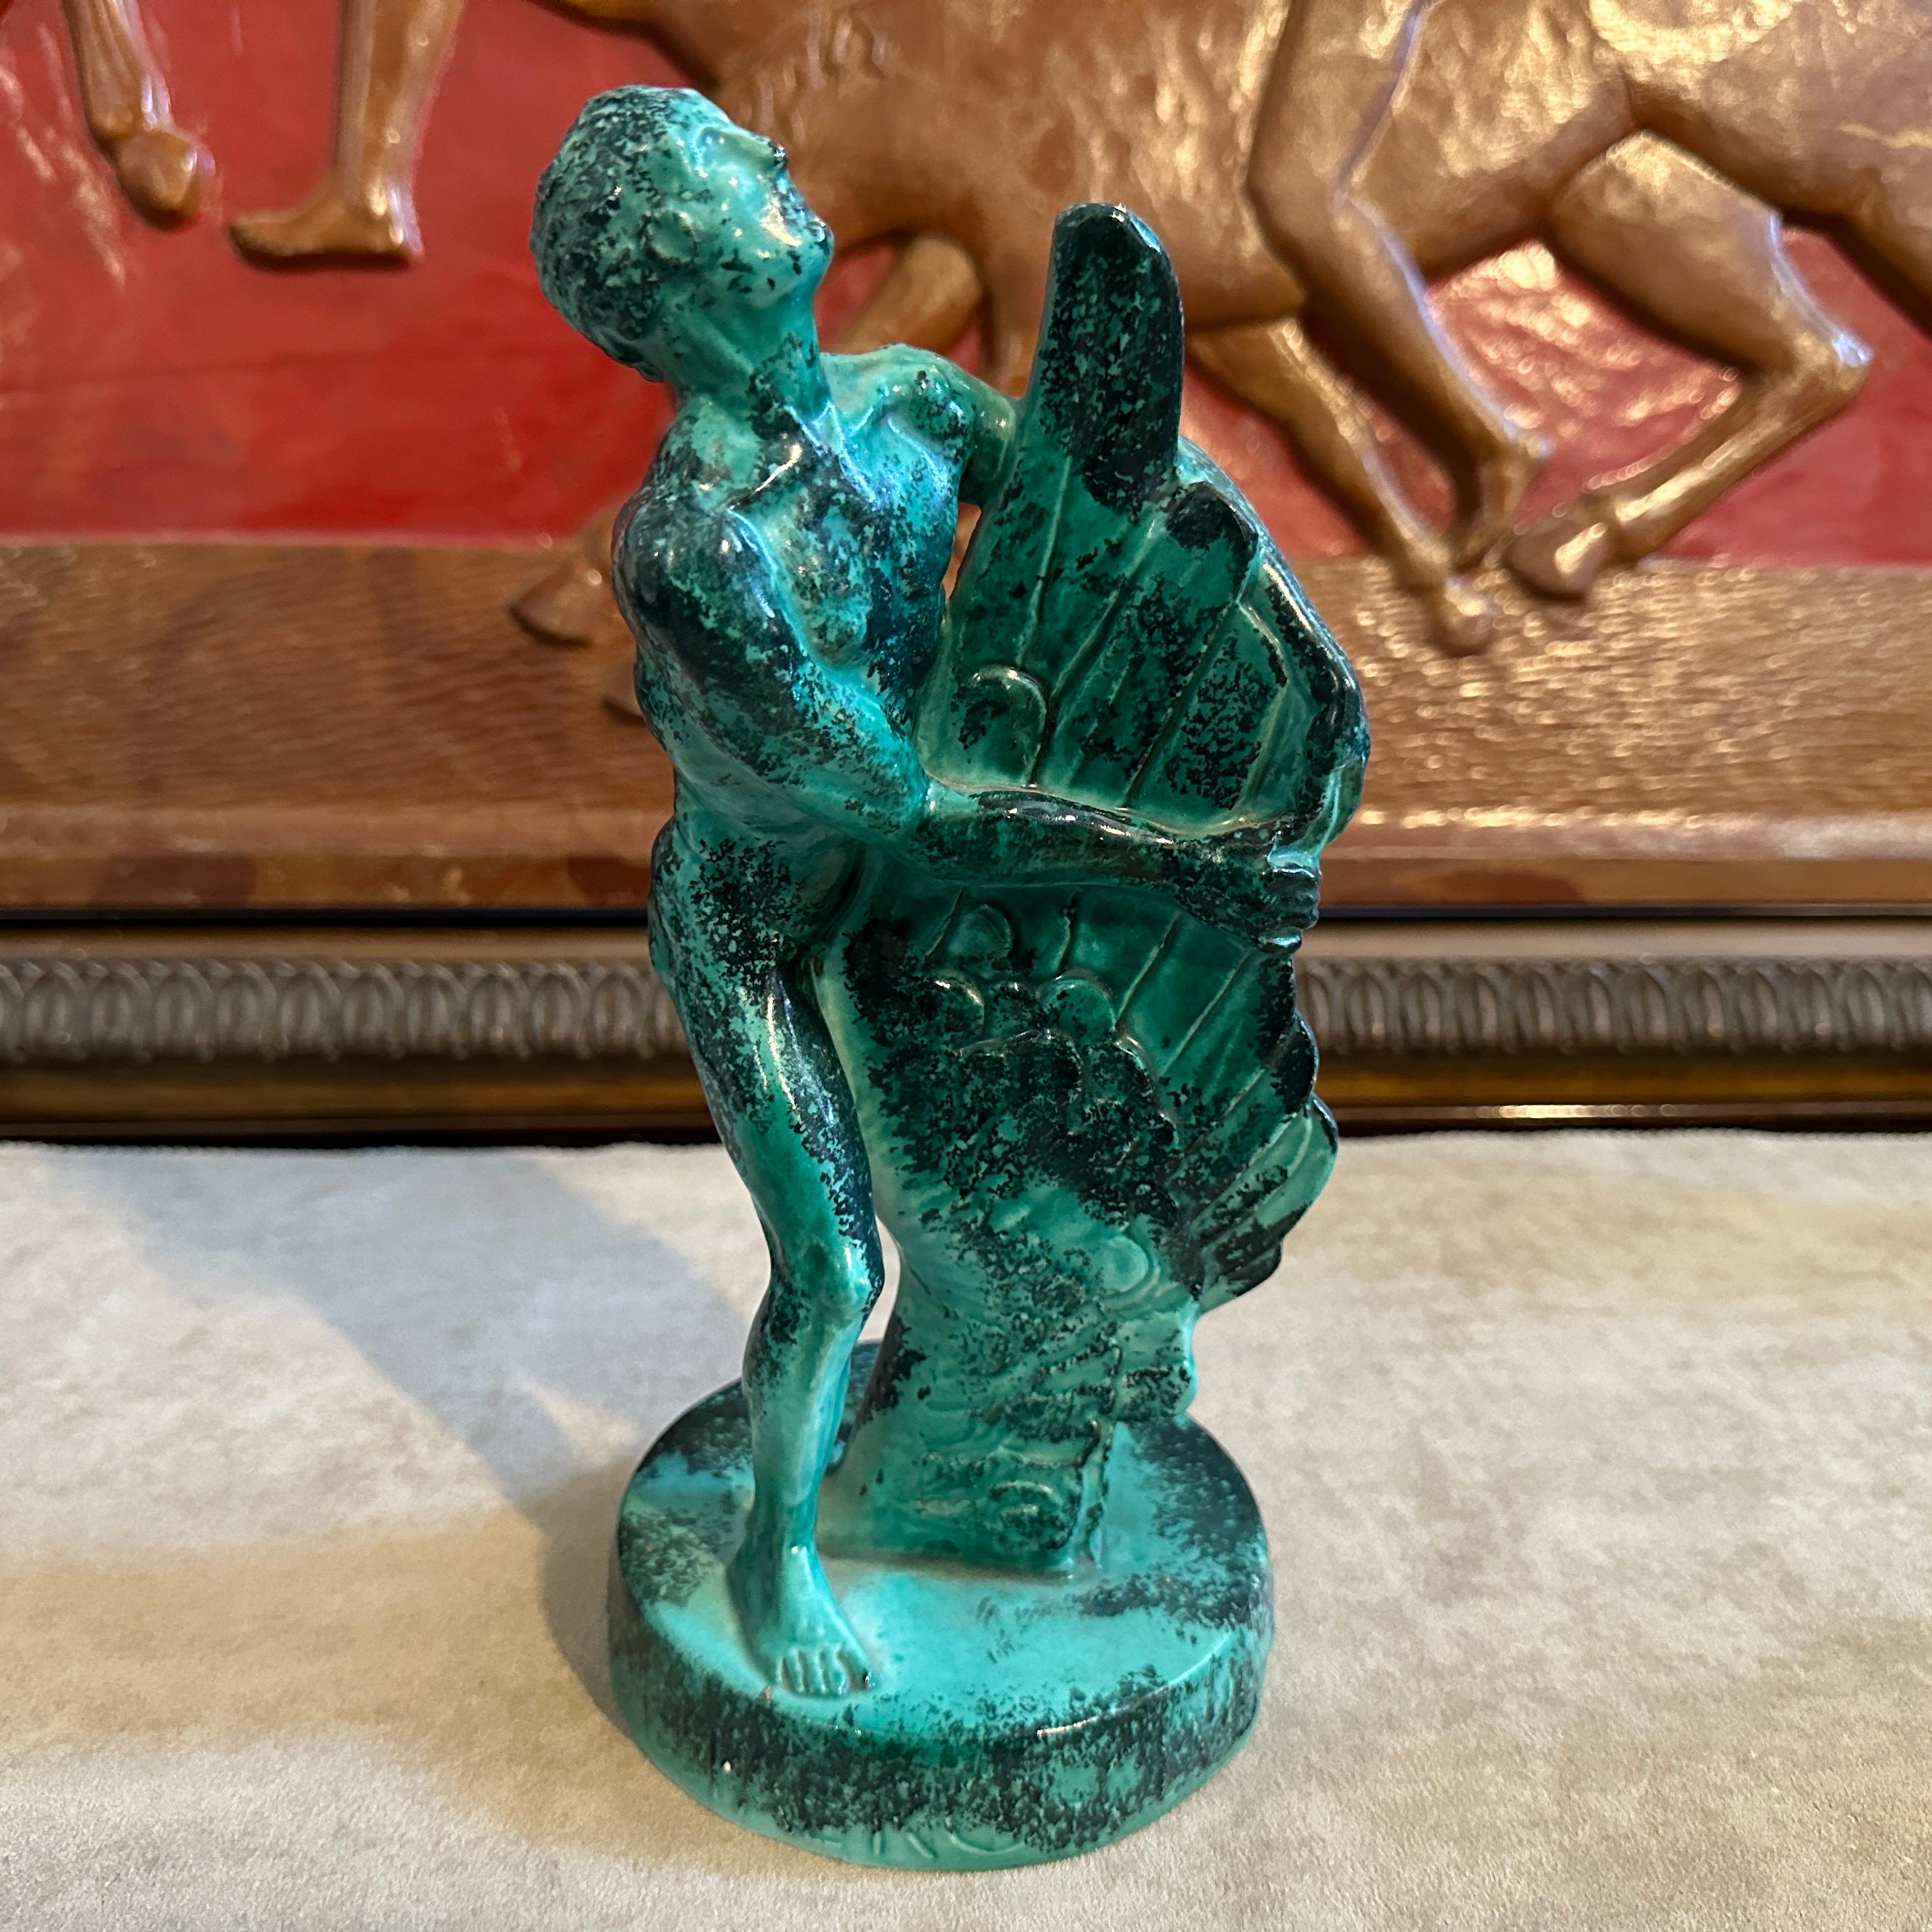 Il s'agit d'une figurine en céramique verte datée du 8-9-1951, spécialement fabriquée pour un rallye d'aviation.  Aeroclub Vicenza. Il est en parfait état et représente un homme stylisé tenant une aile. La figurine porte en relief sur la base la